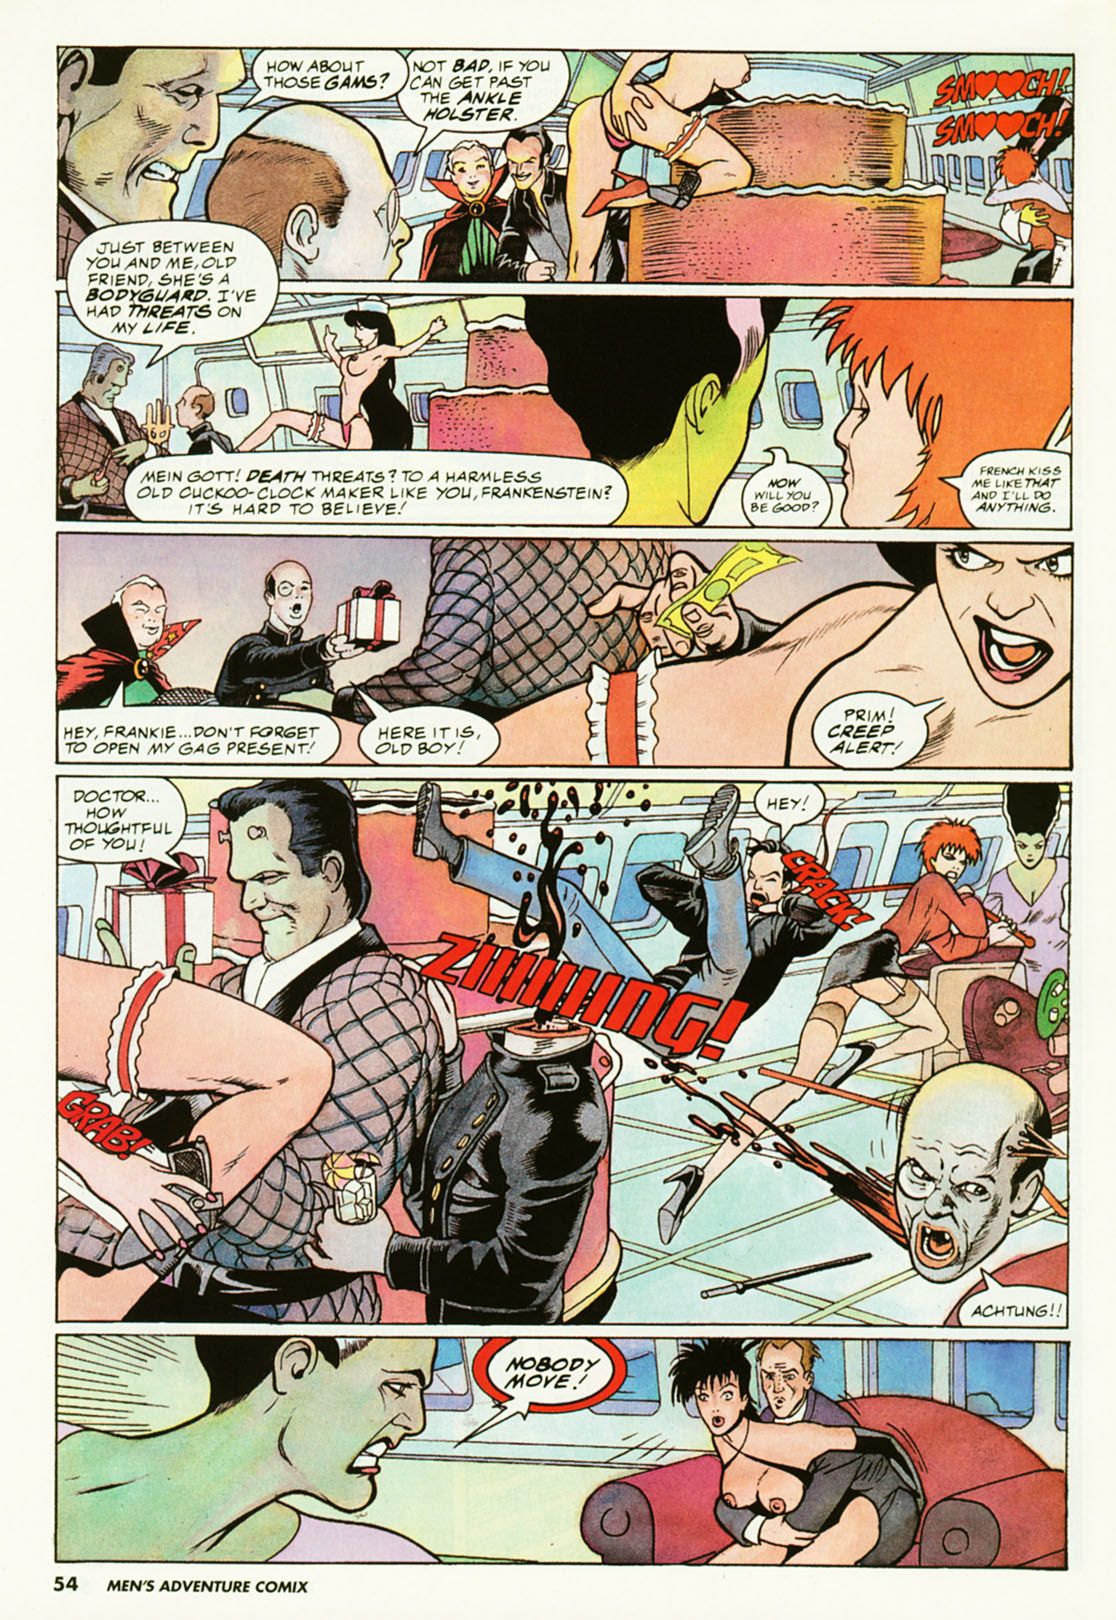 penthouse męskie przygody komiks #3 część 3